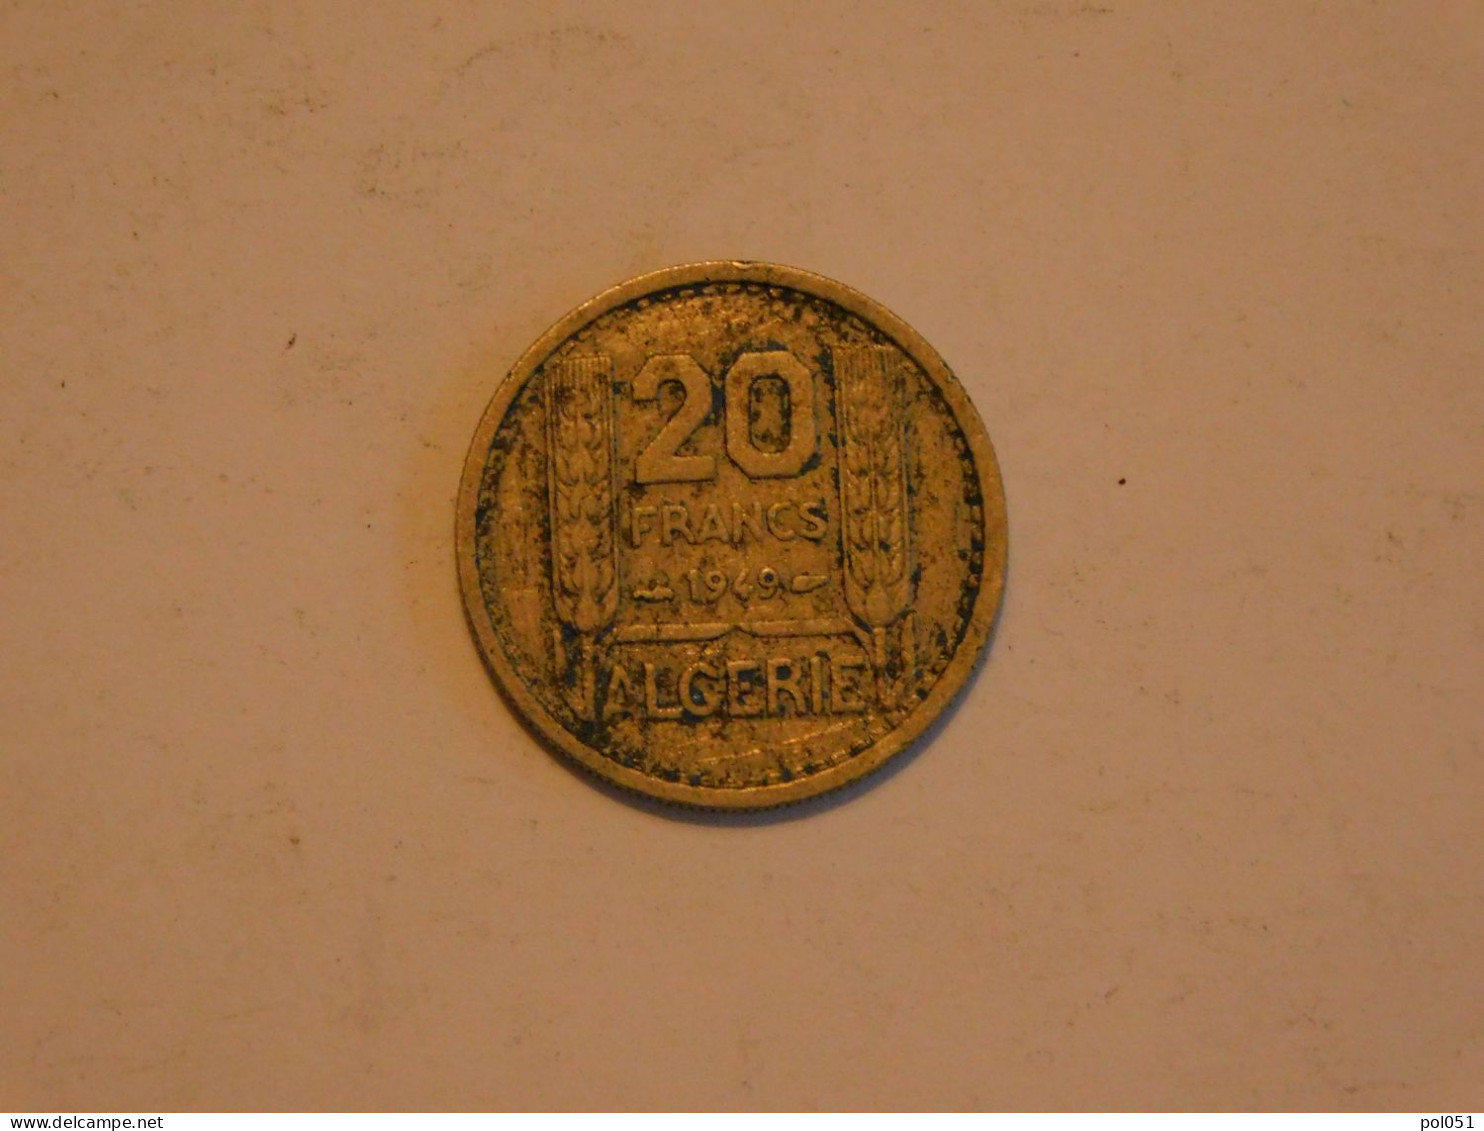 ALGERIE 20 Francs 1949 - Algerien